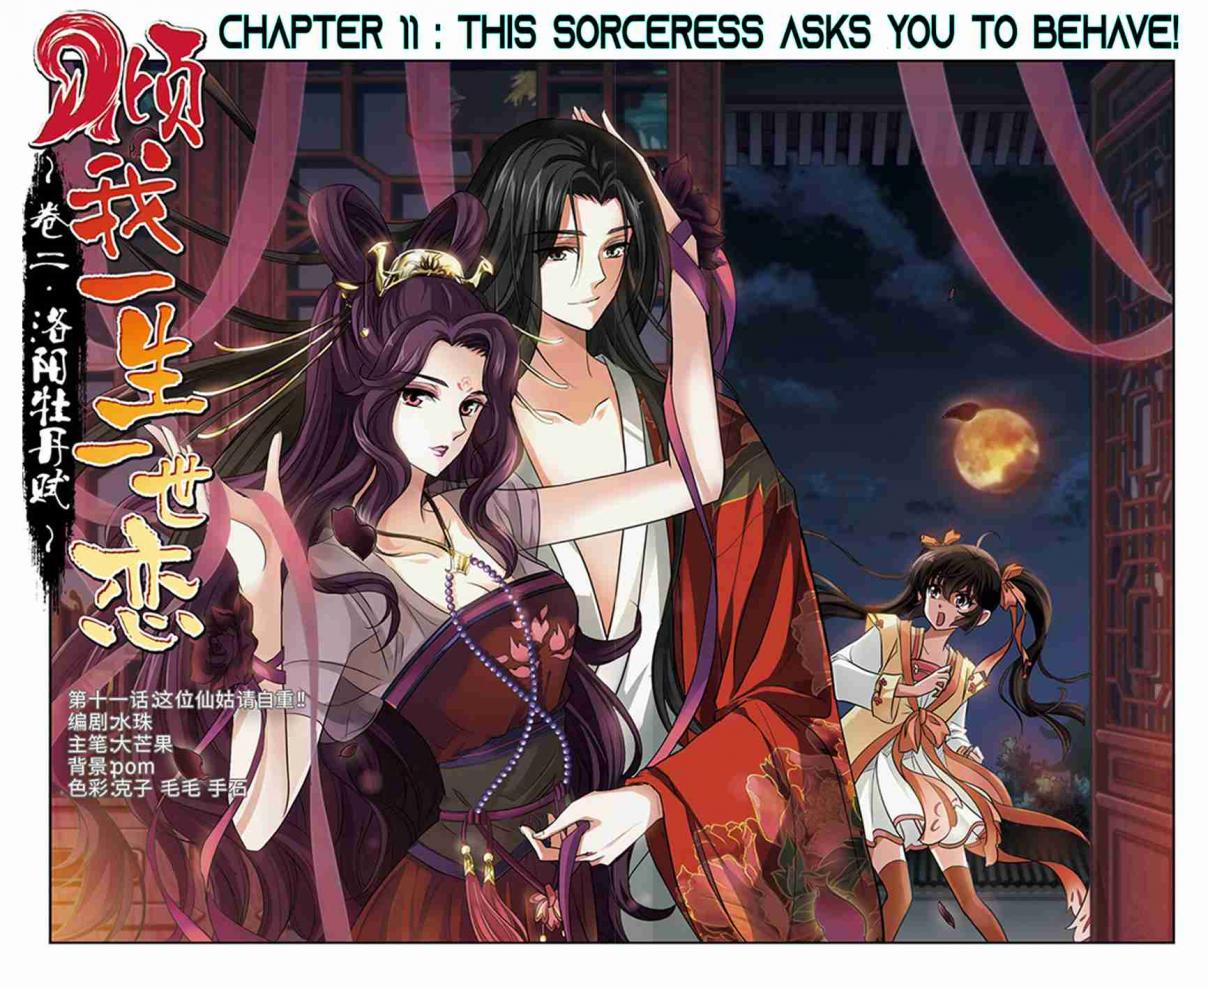 Qing Wo Yi Sheng Yi Shi Lian Ch. 11 This Sorceress Asks You To Behave!